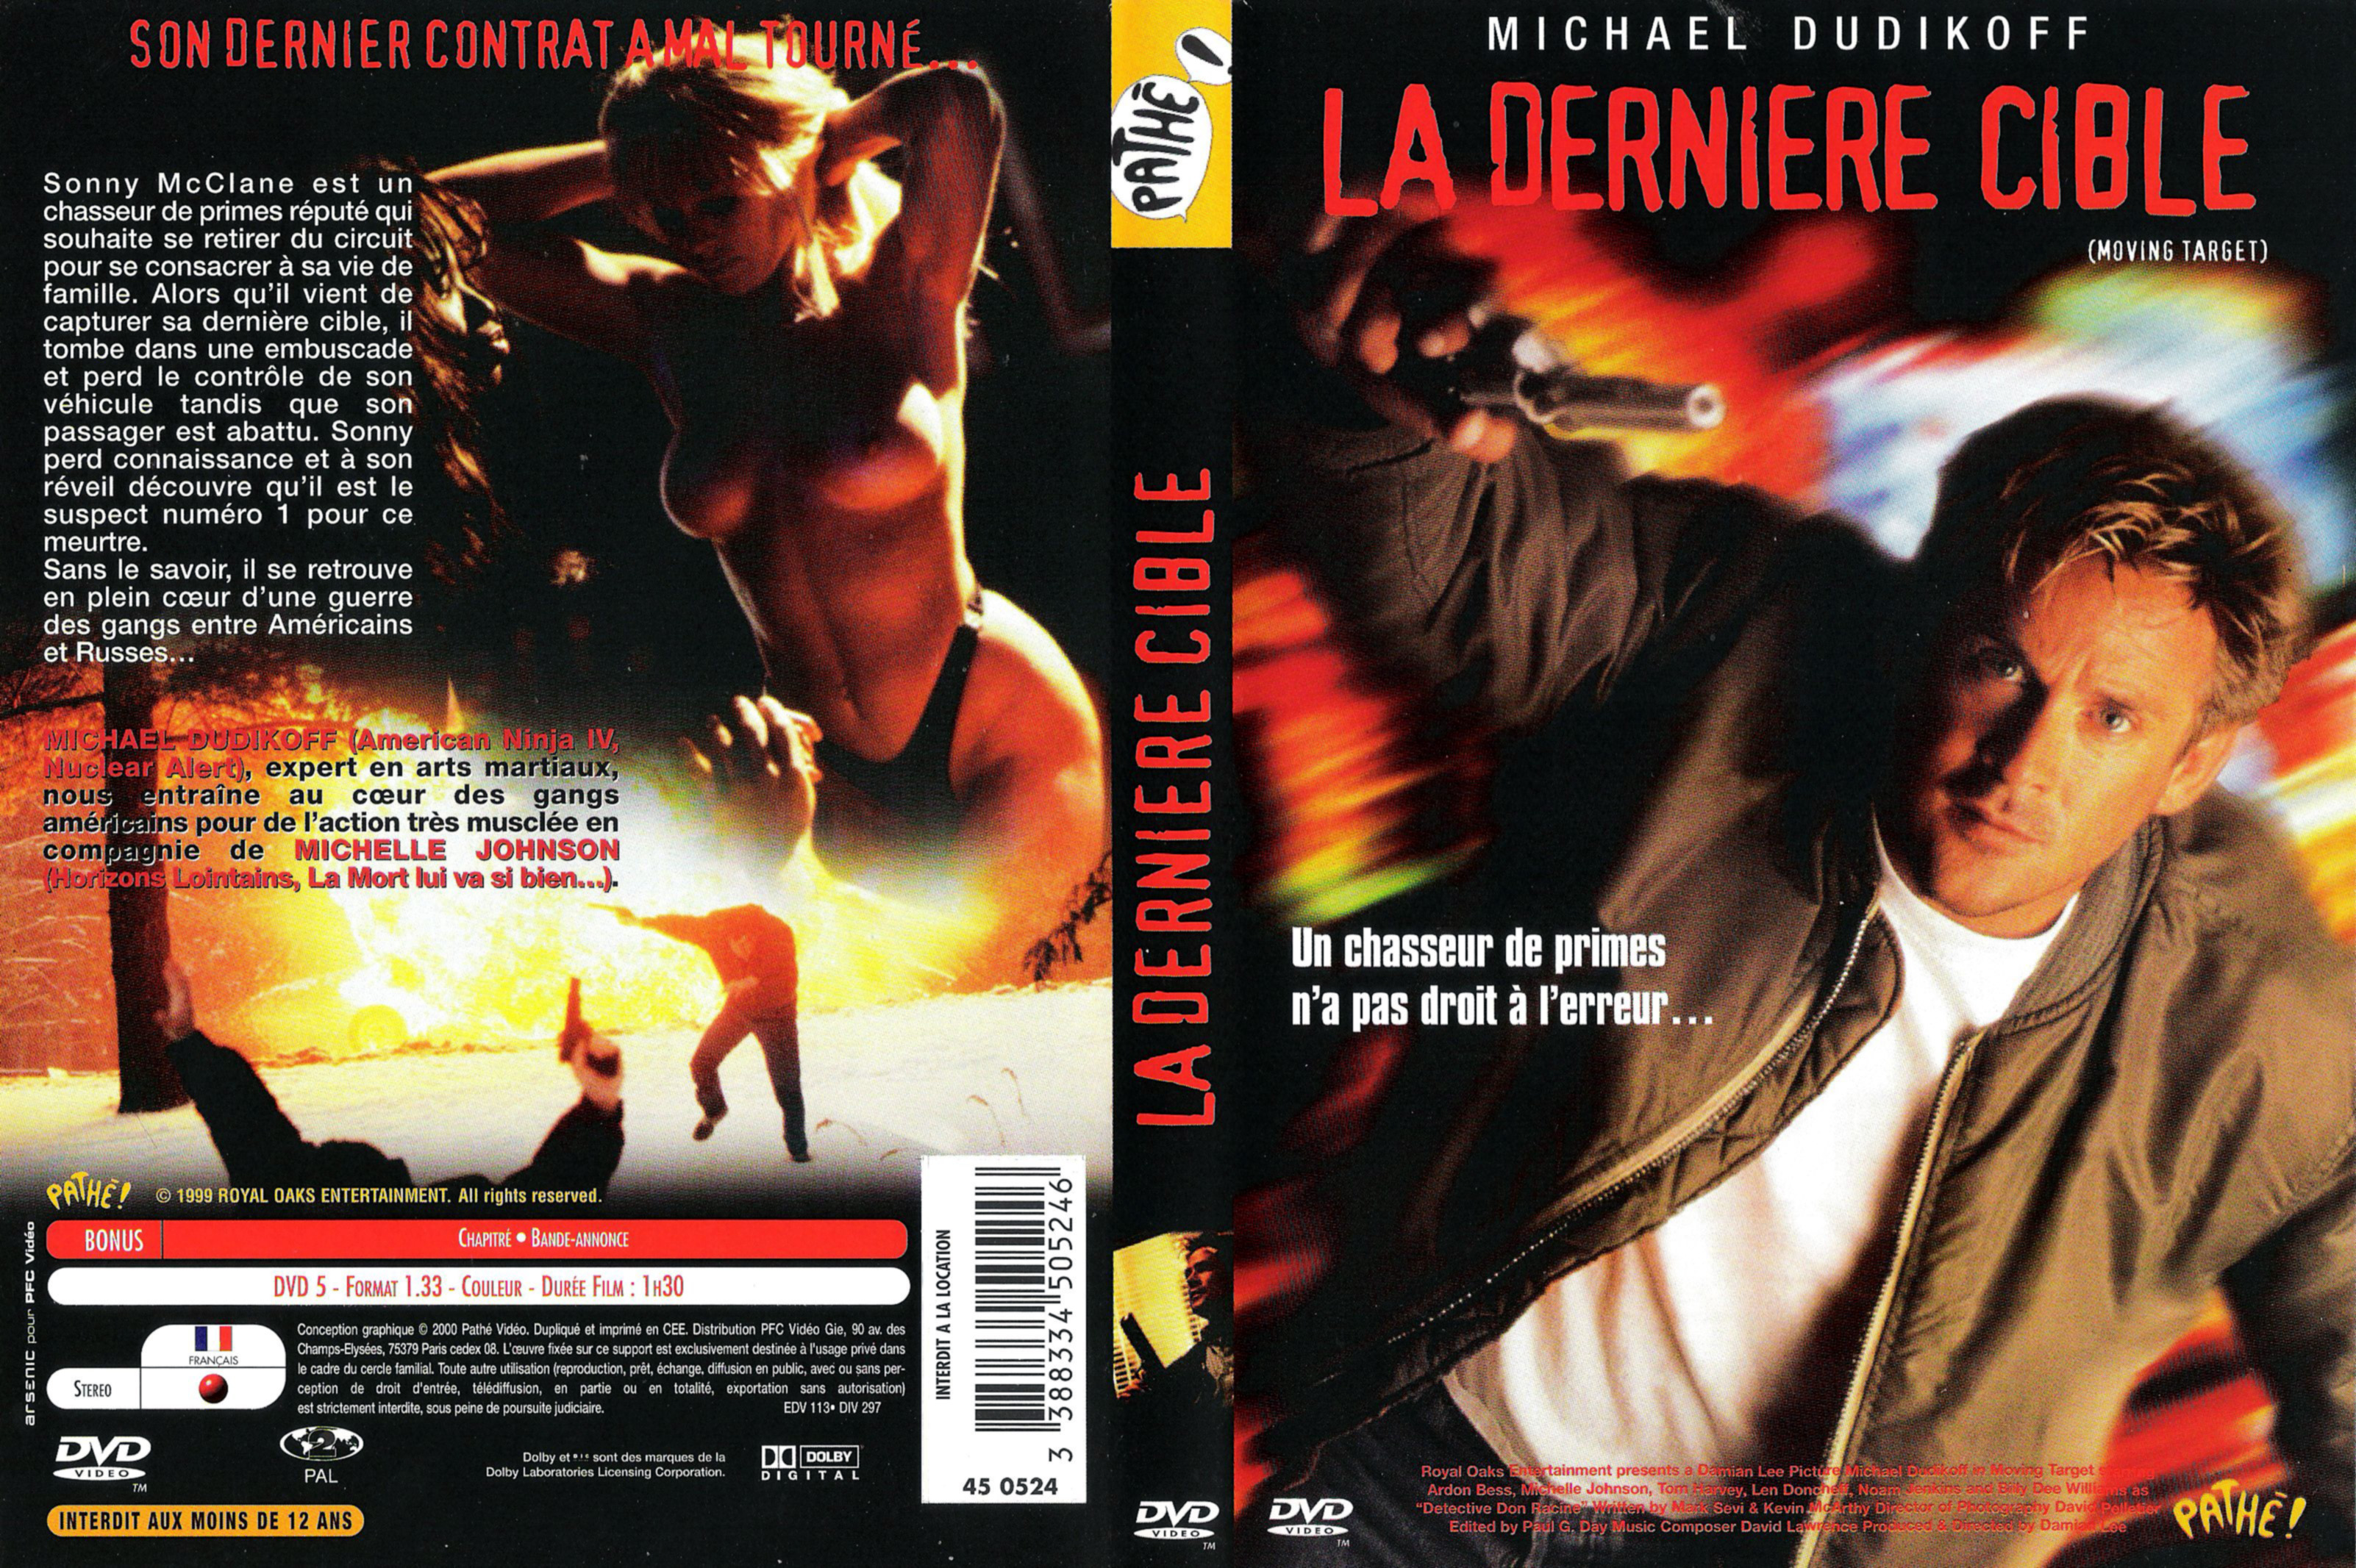 Jaquette DVD La dernire cible (1999)